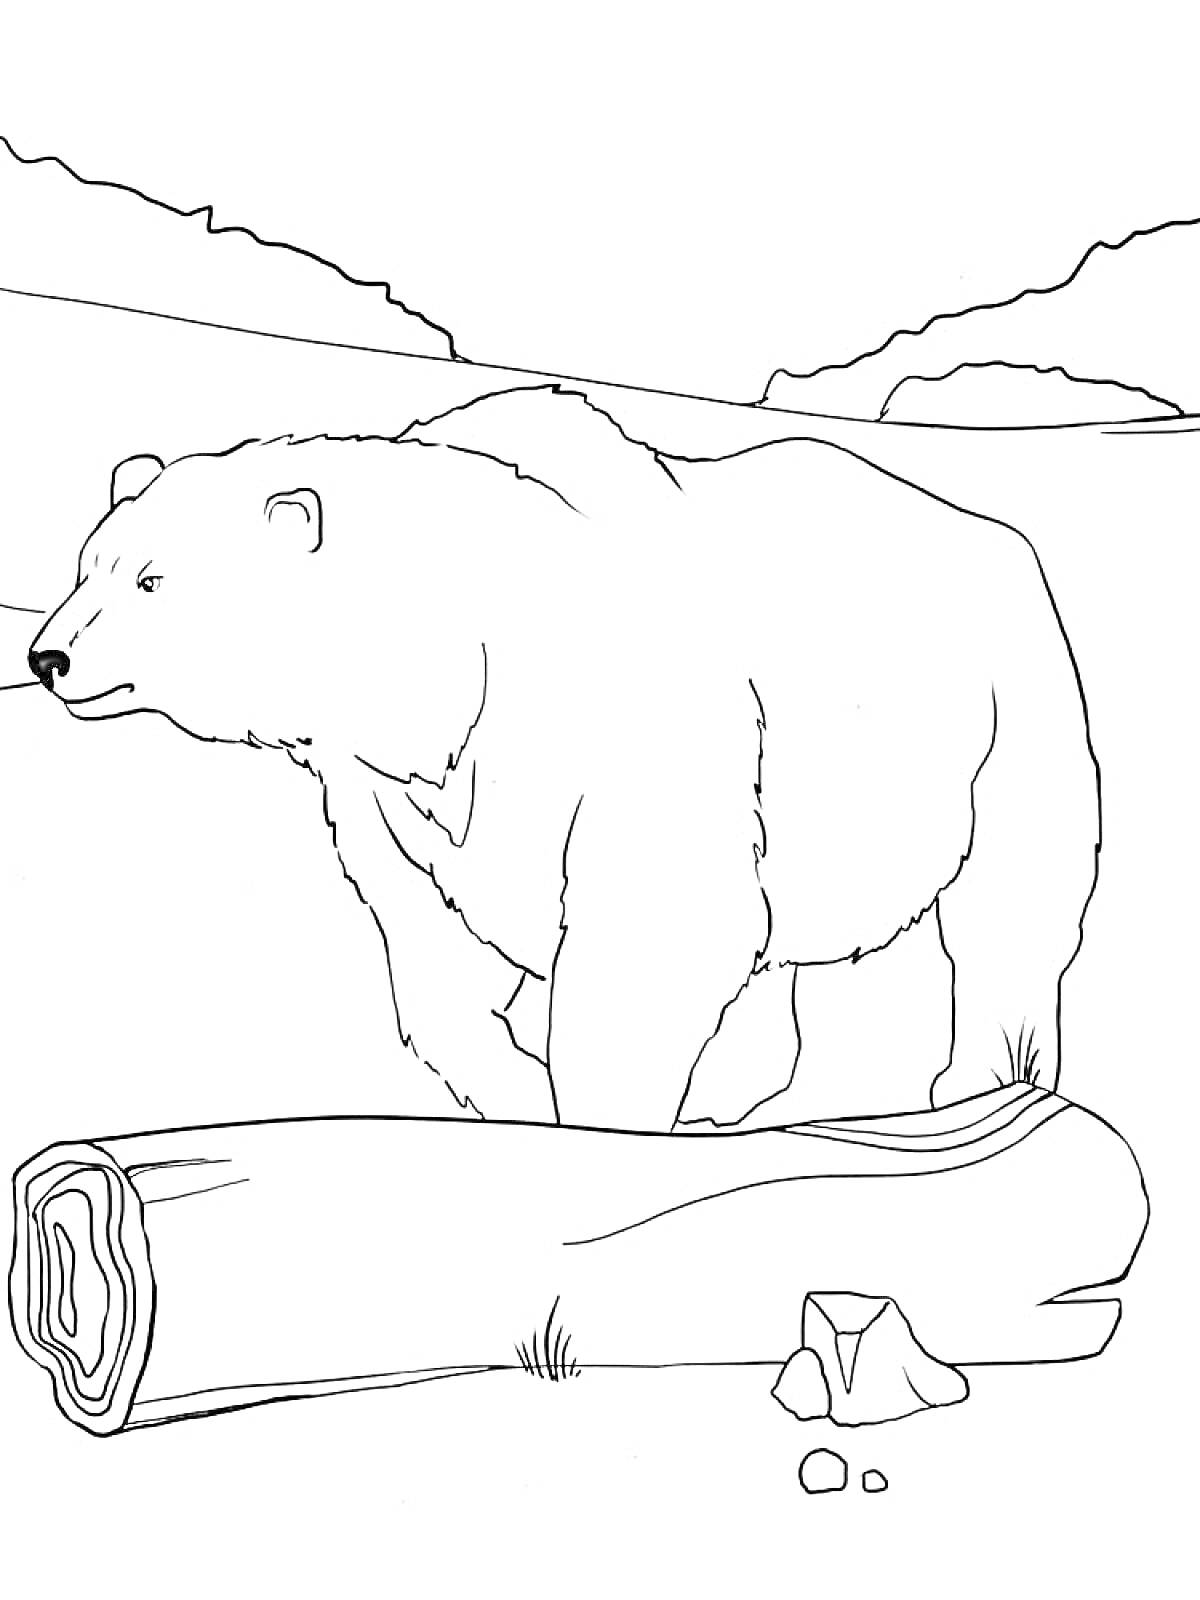 Белый медведь, бревно, камни, горная местность на заднем плане